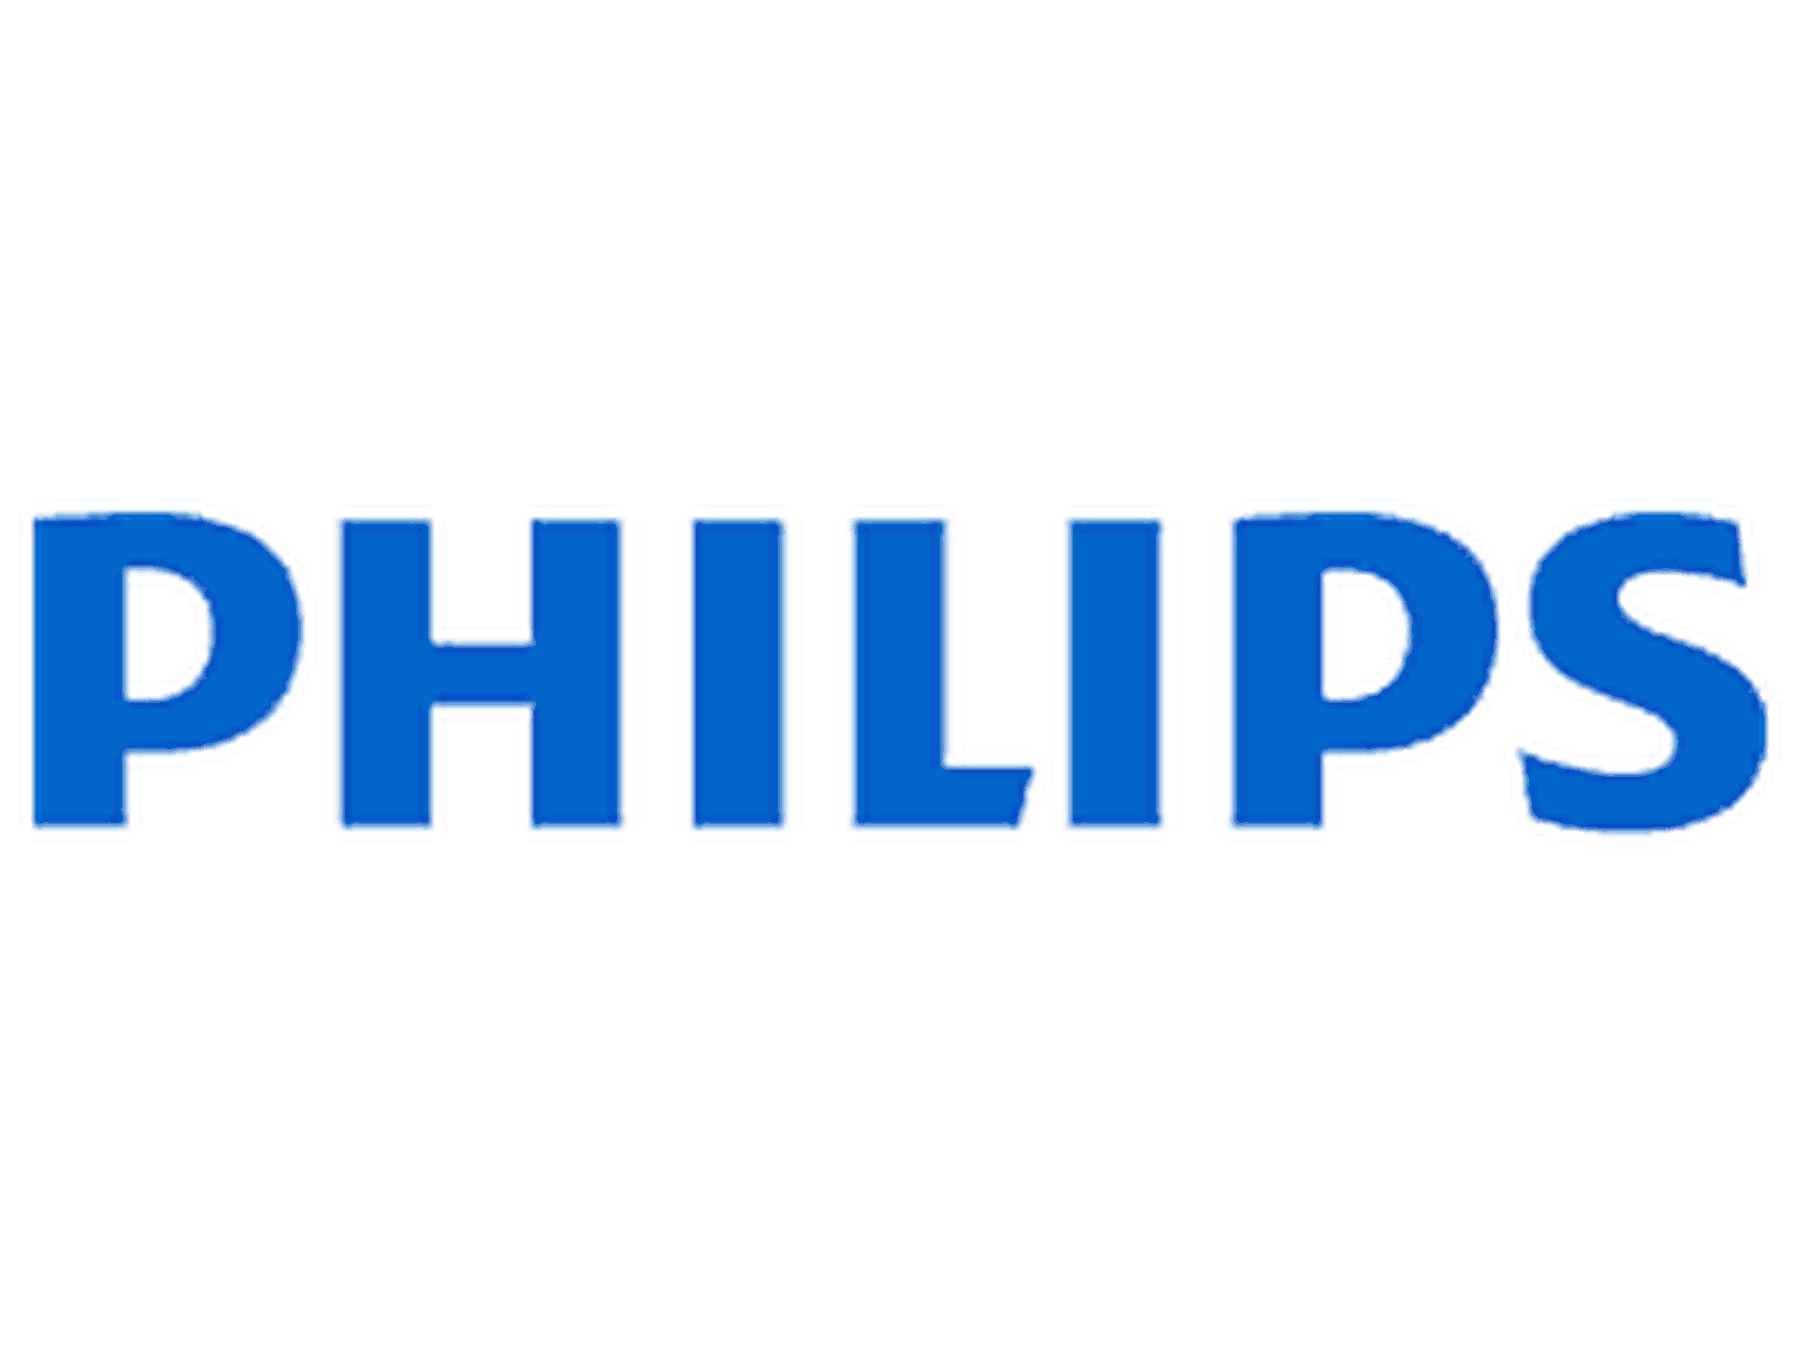 Philips rabattkoder